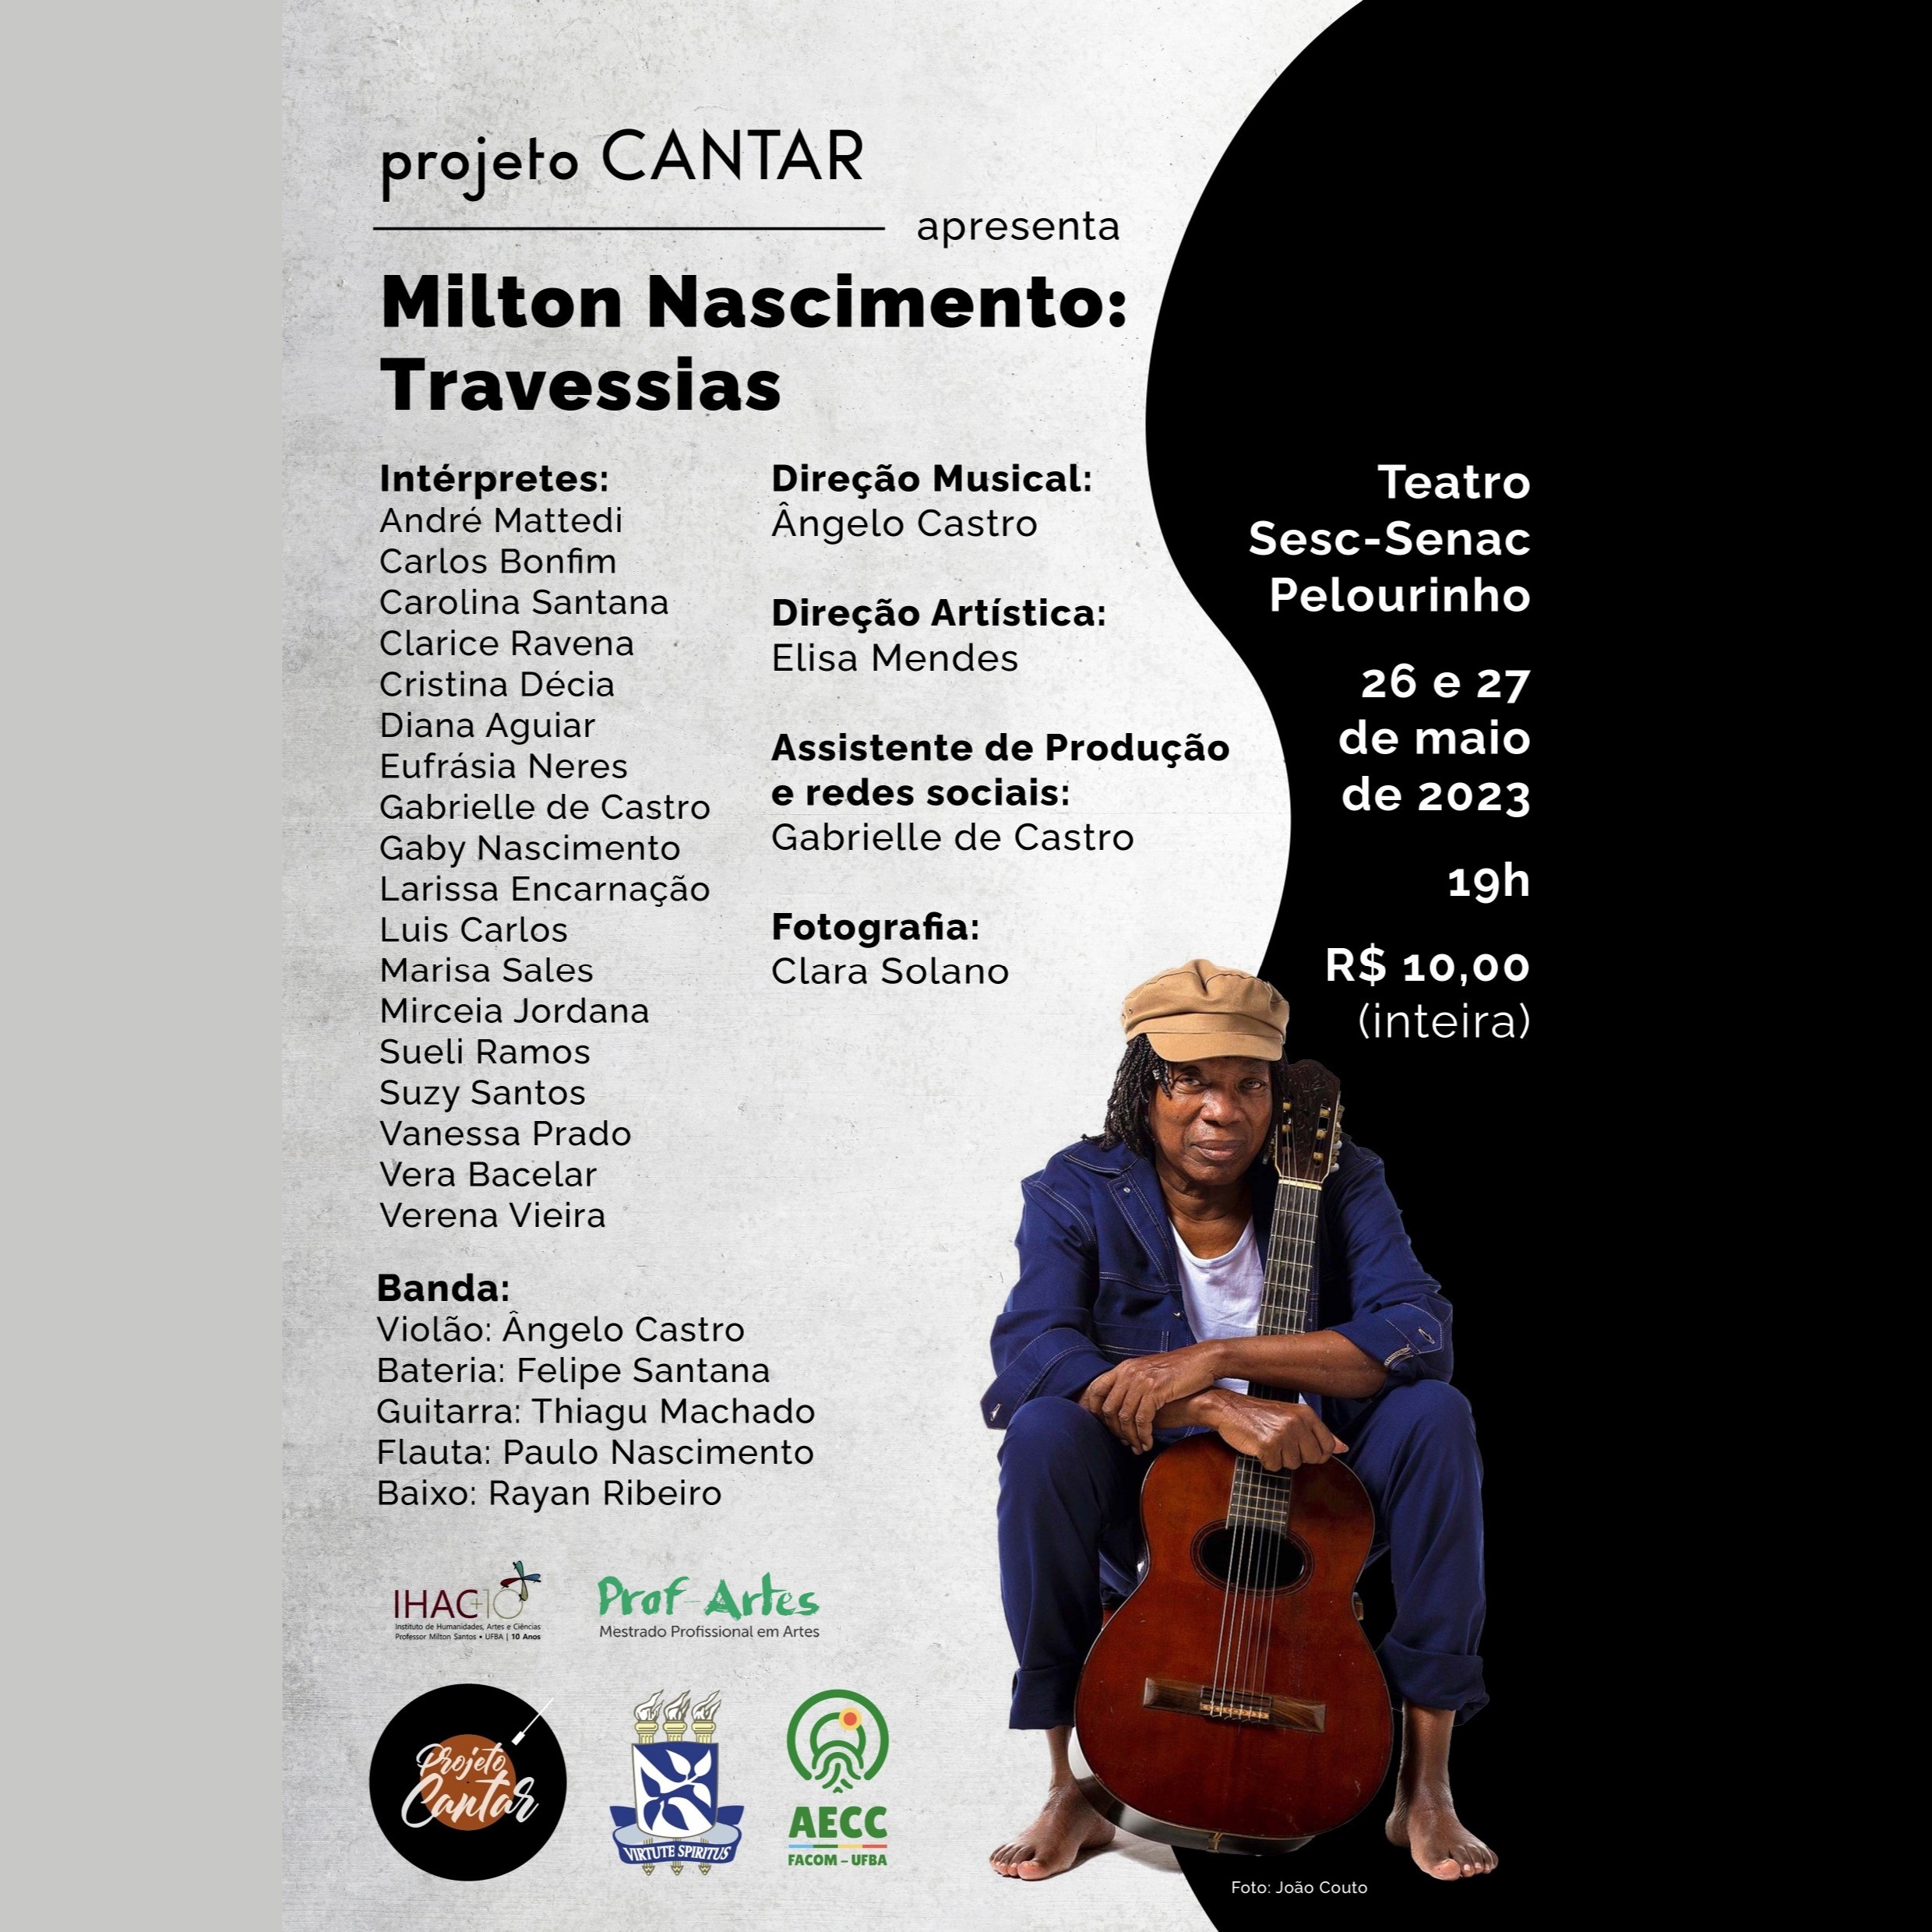 Projeto CANTAR faz homenagem a Milton Nascimento no Teatro Sesc-Senac Pelourinho